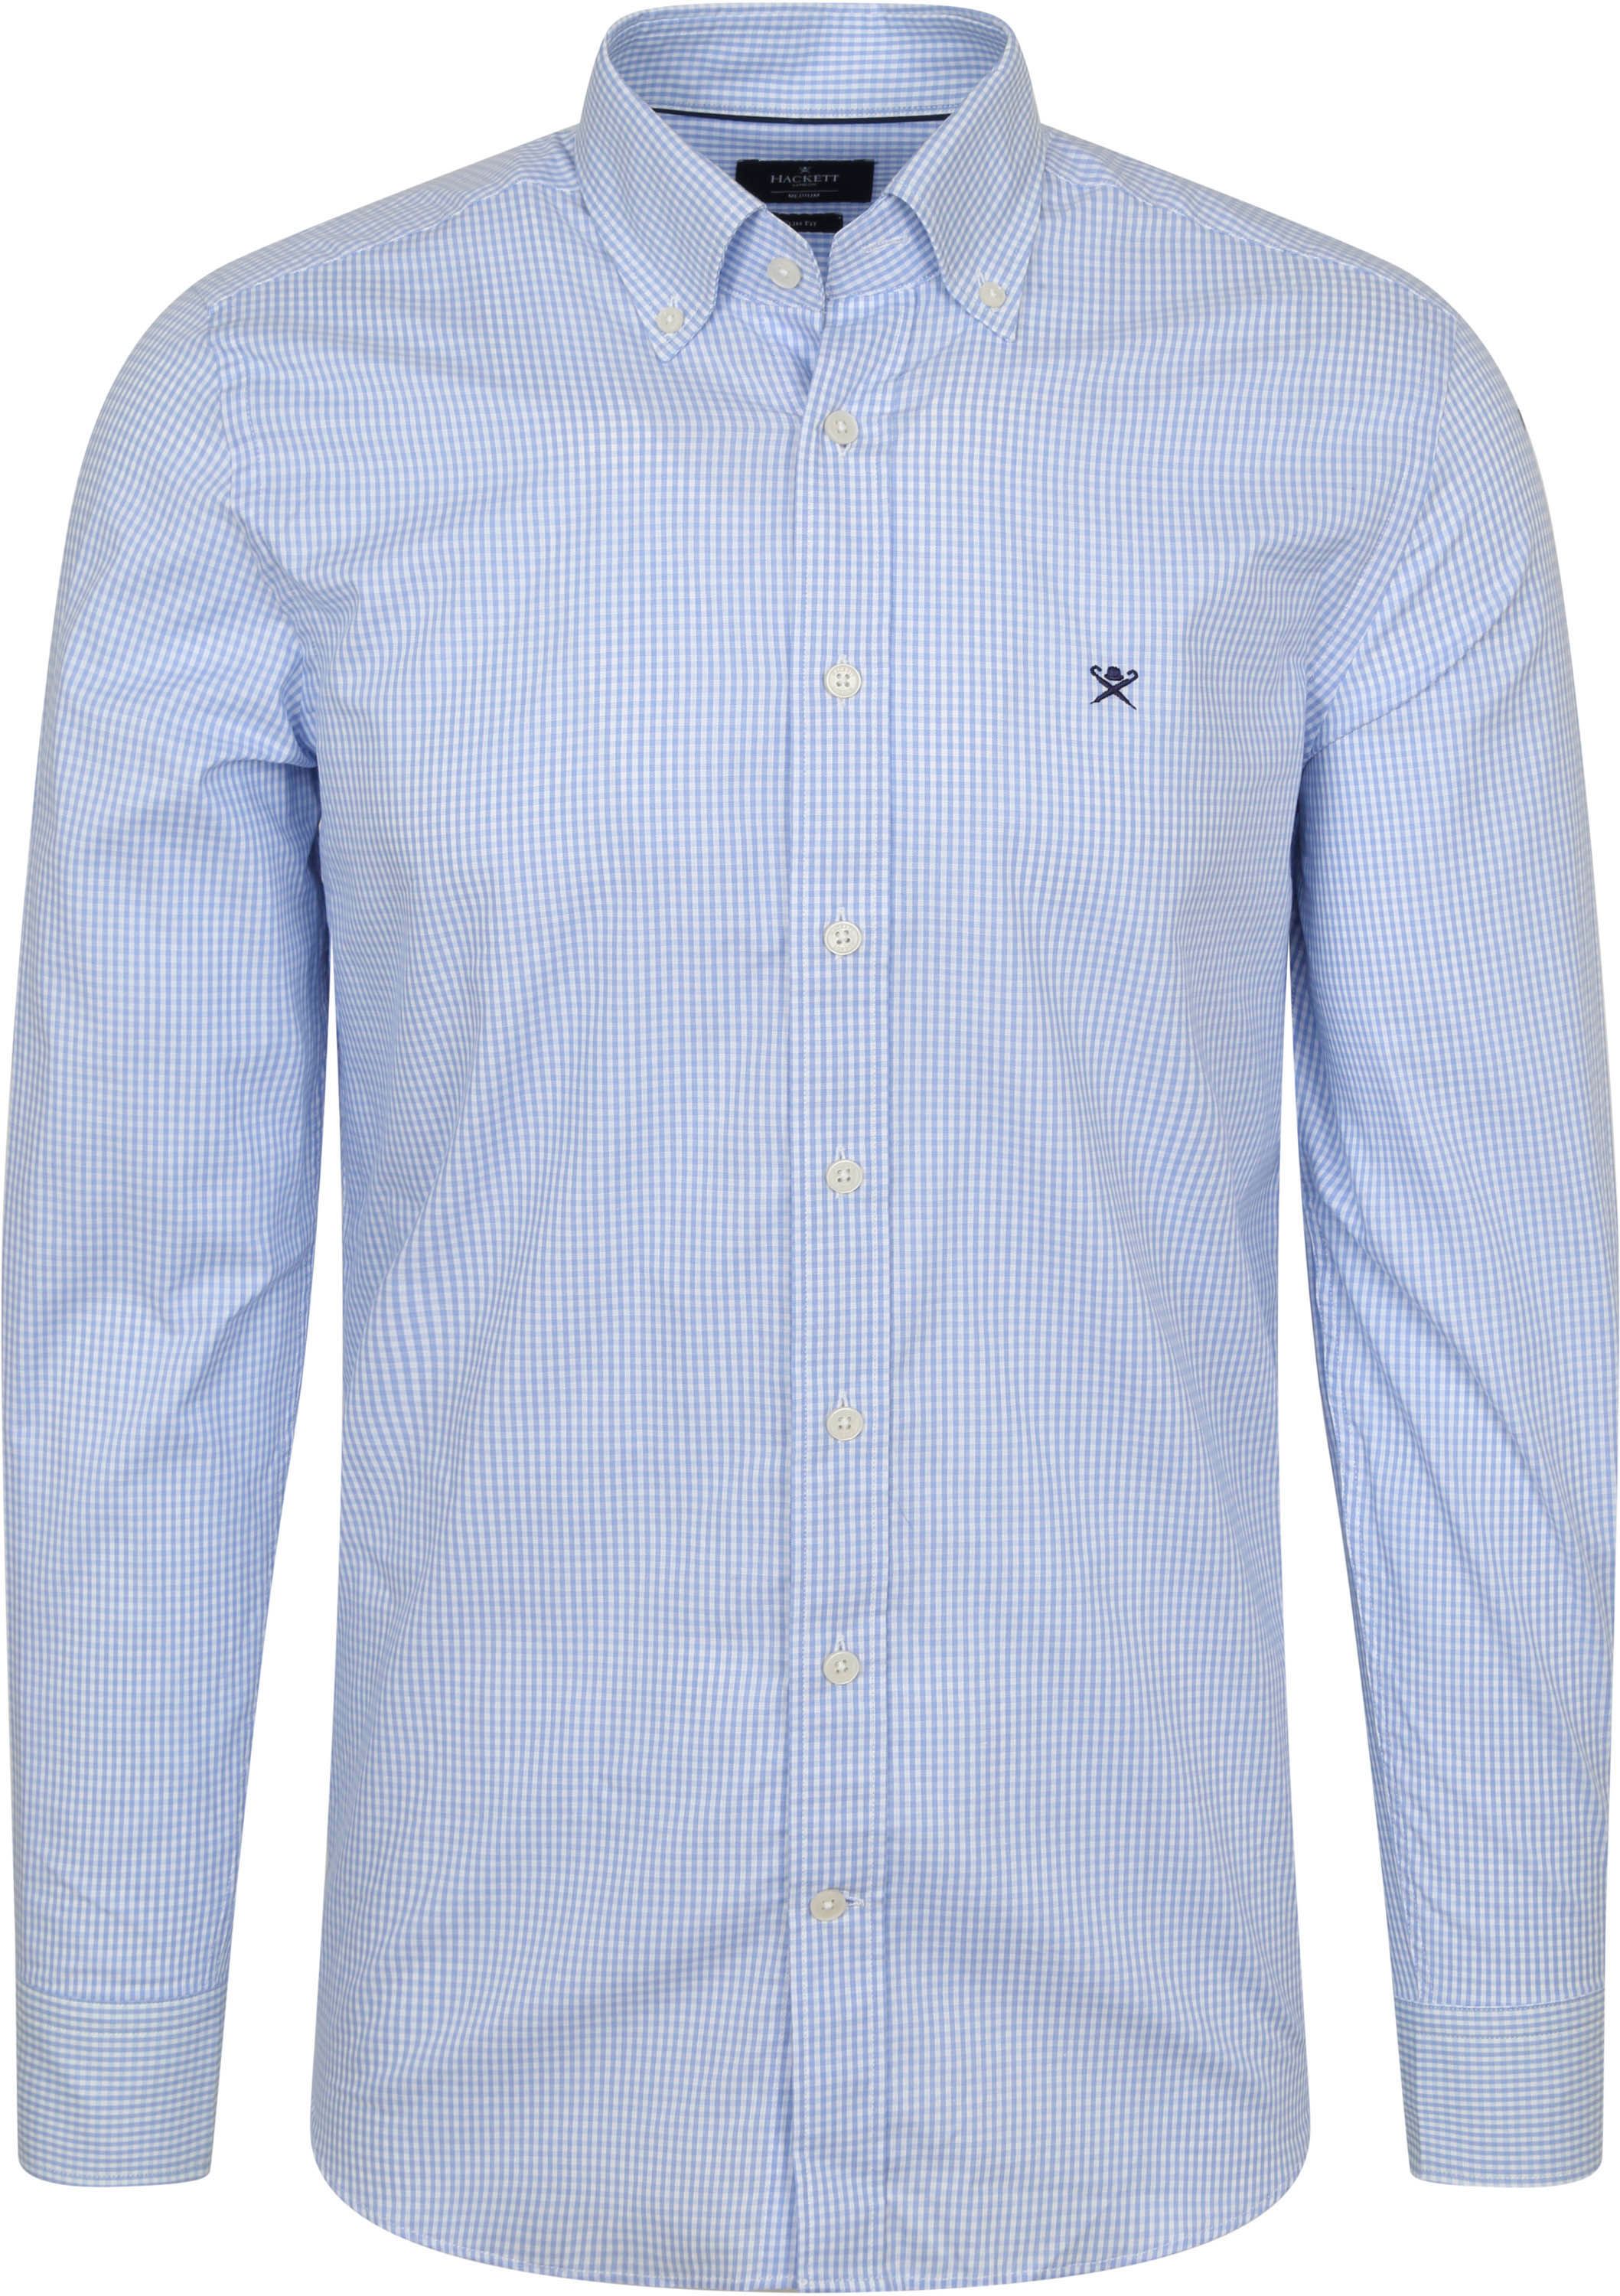 Hackett Shirt Checkered Light Light blue Blue size XL